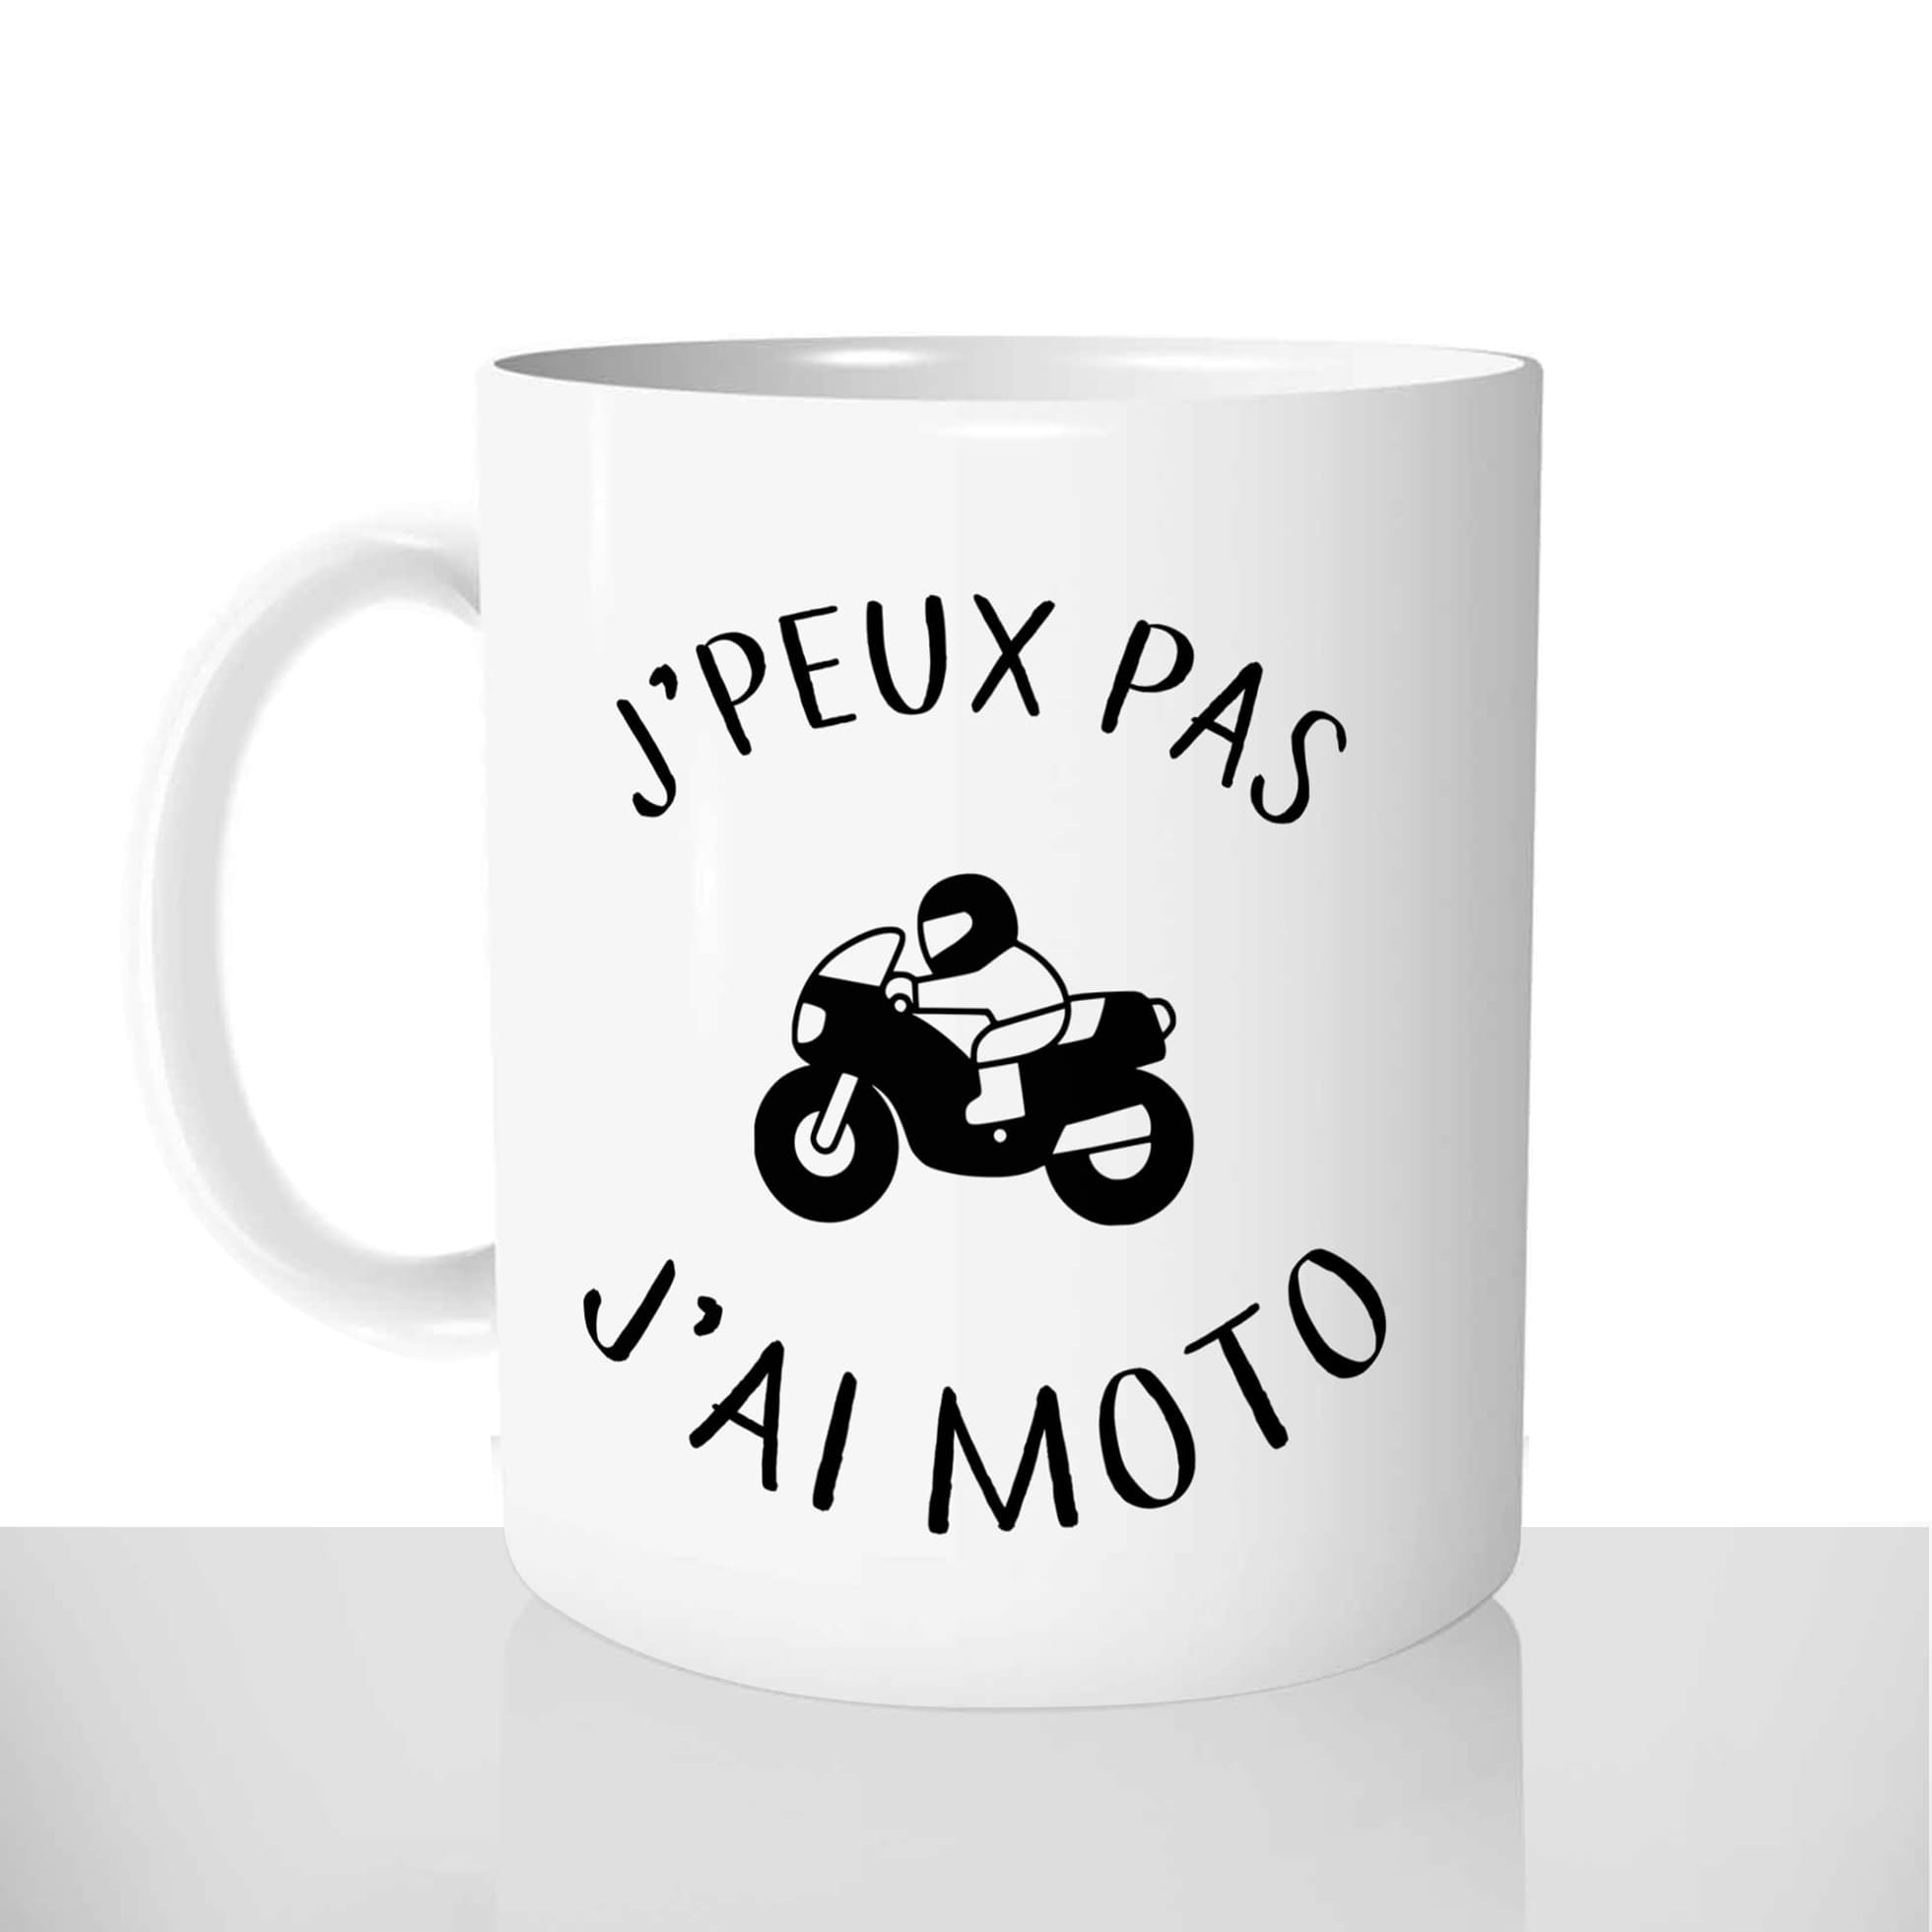 mug classique en céramique 11oz personnalisé personnalisation photo jpeux pas jai moto motard chou offrir cadeau